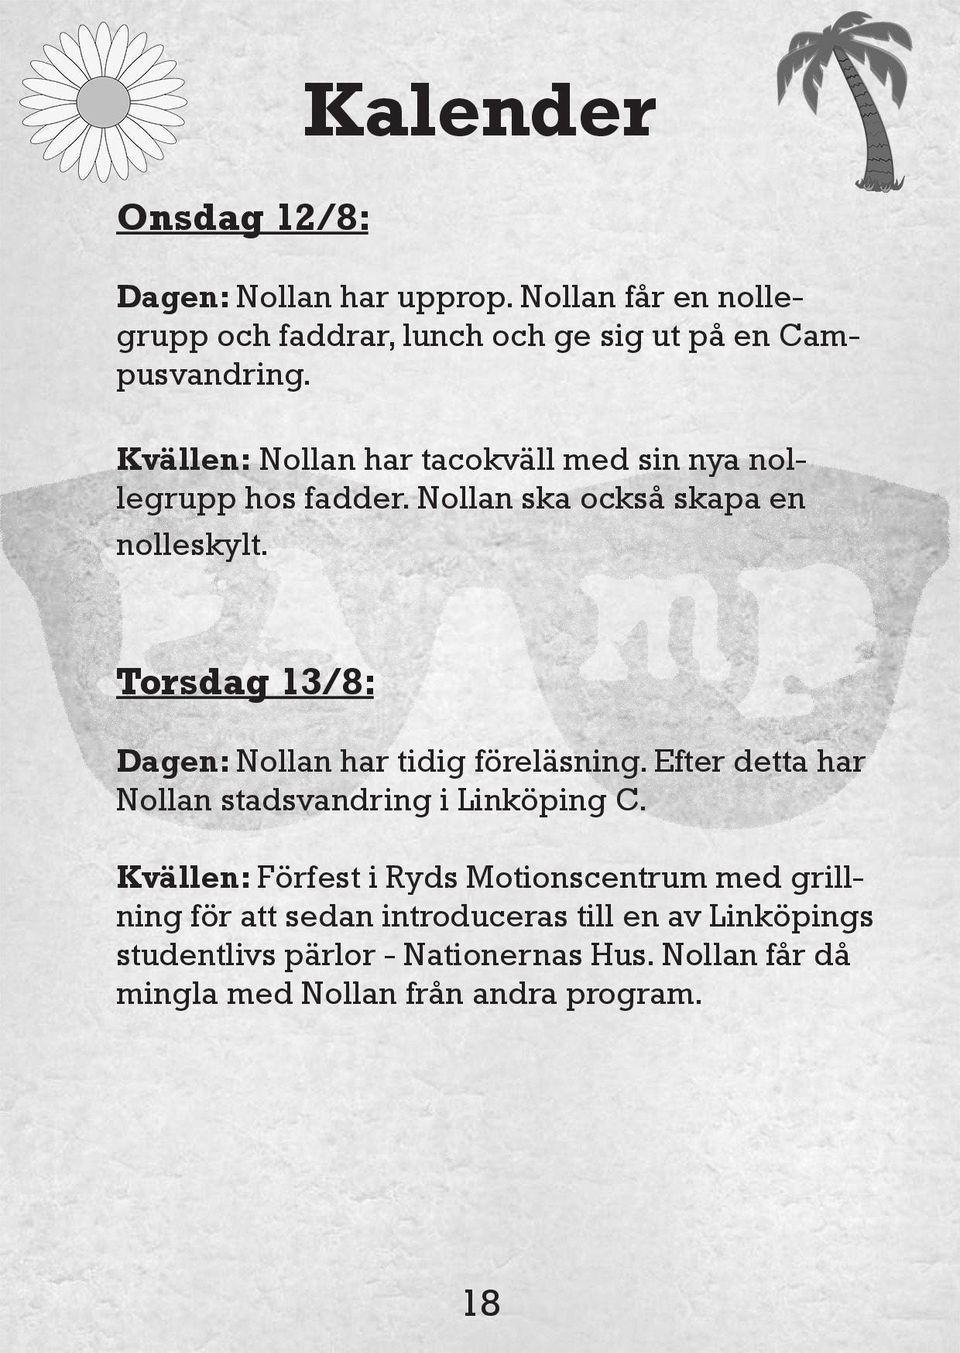 Torsdag 13/8: Dagen: Nollan har tidig föreläsning. Efter detta har Nollan stadsvandring i Linköping C.